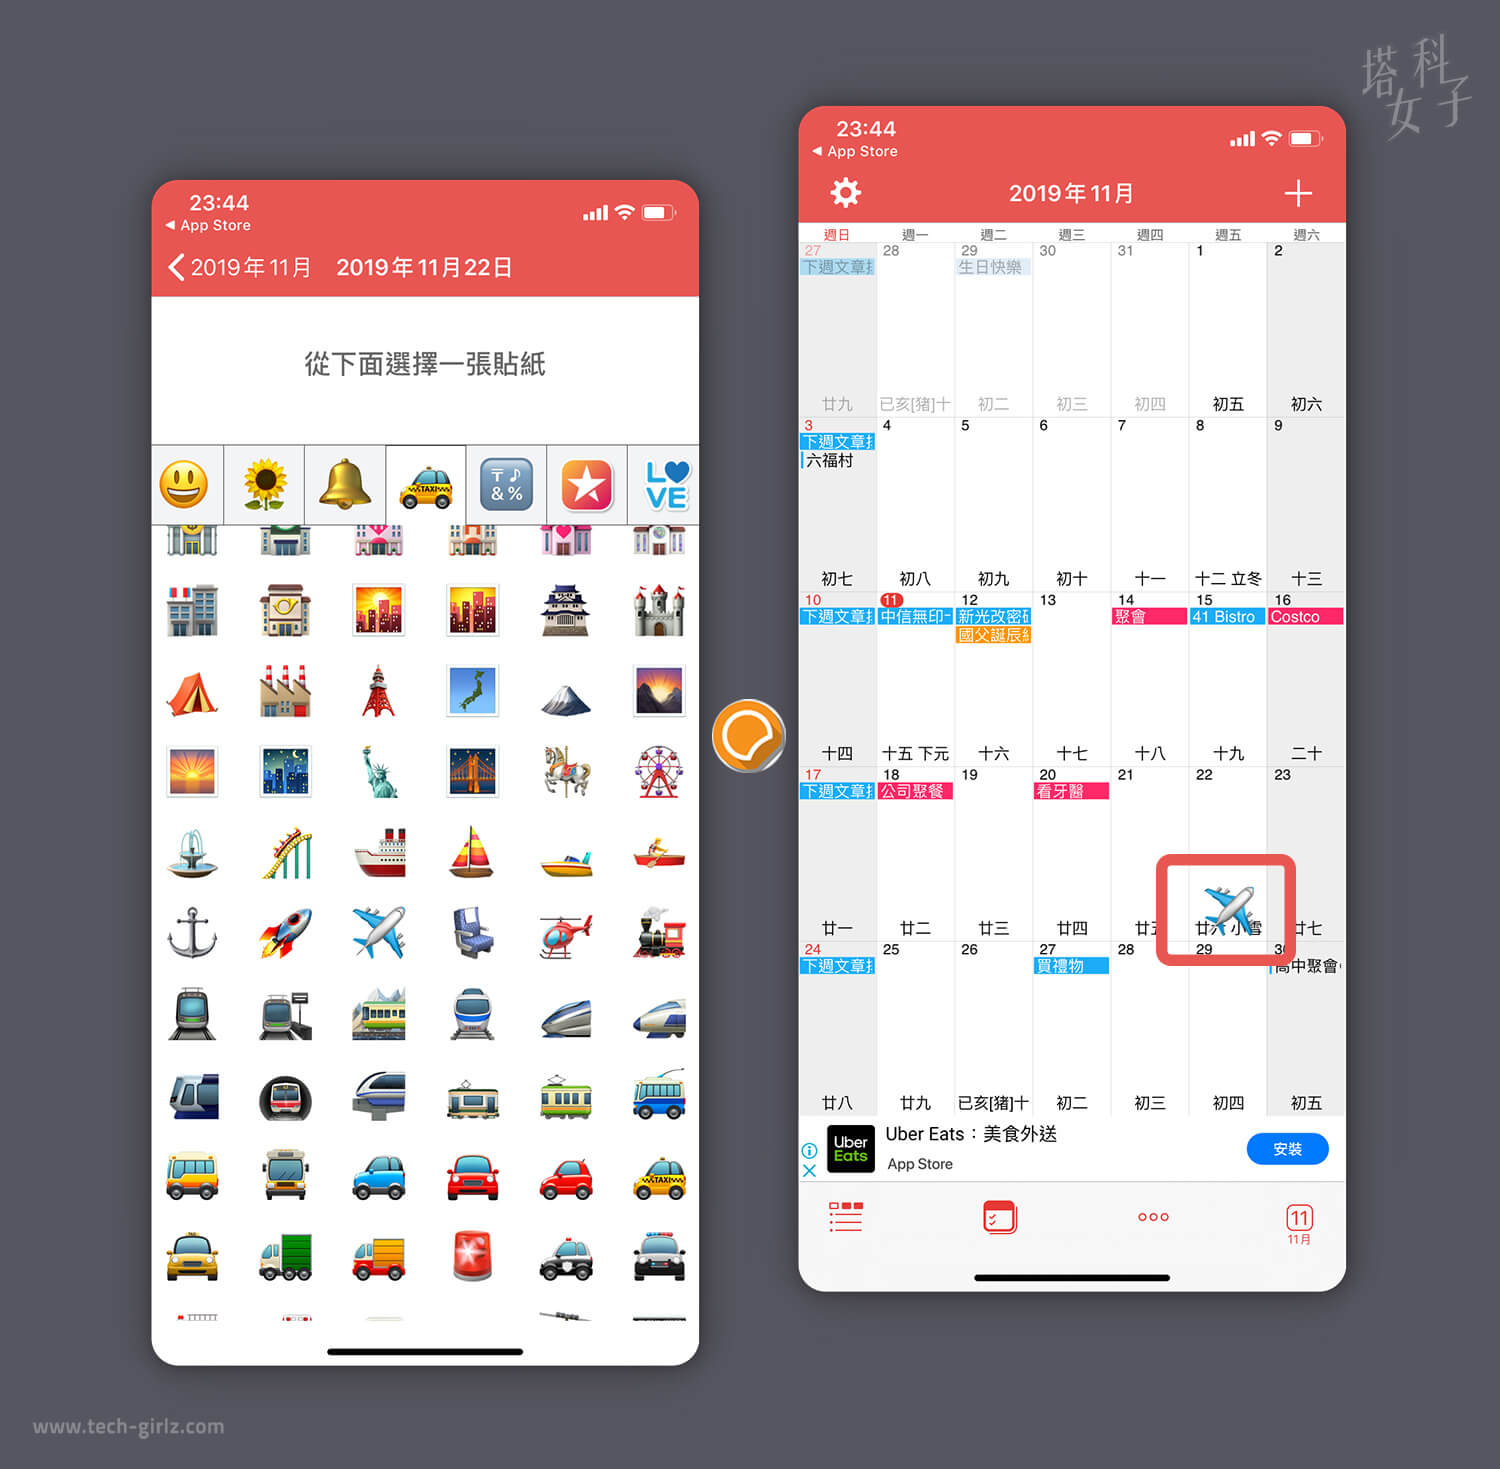 行事曆 App 推薦，WidgetCal，加入貼圖